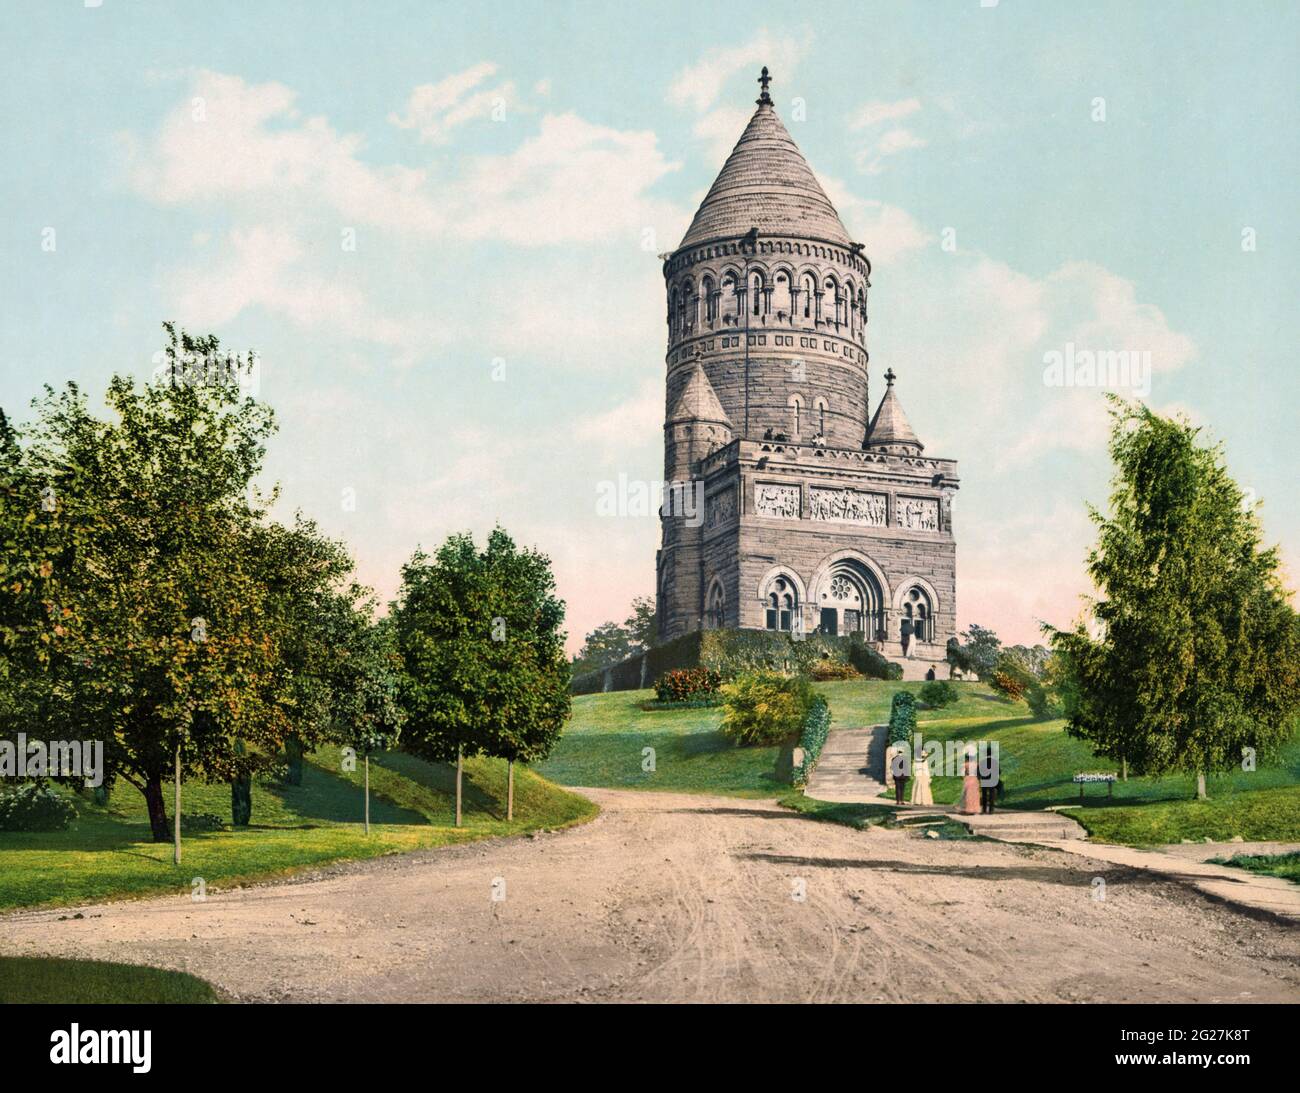 Impresión de fotocroma del Garfield Memorial en Cleveland, Ohio, alrededor de 1900. Foto de stock